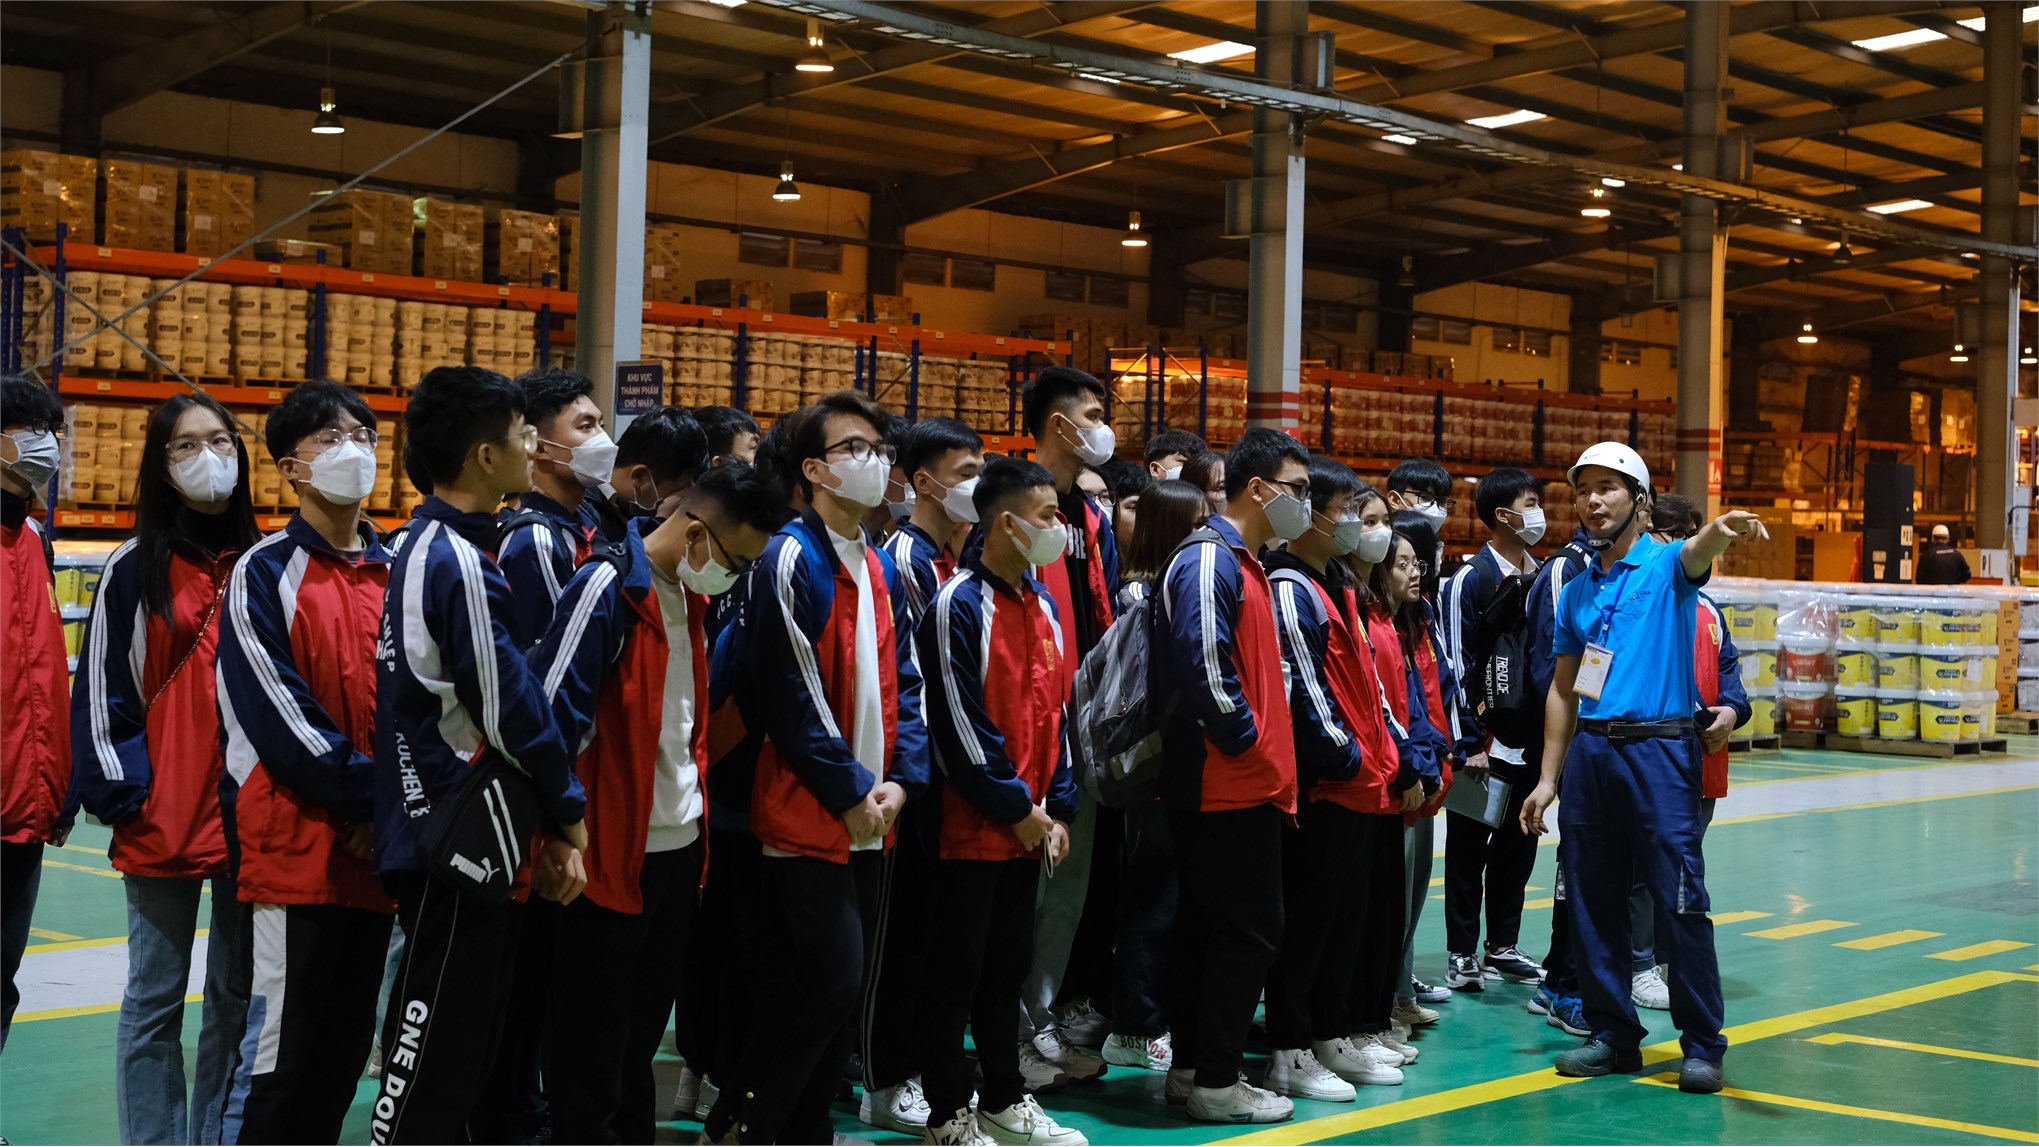 Sinh viên Khoa Công nghệ Hóa – Trường Đại học Công nghiệp Hà Nội tham quan Nhà máy Công ty TNHH sơn Kansai – Alphanam.